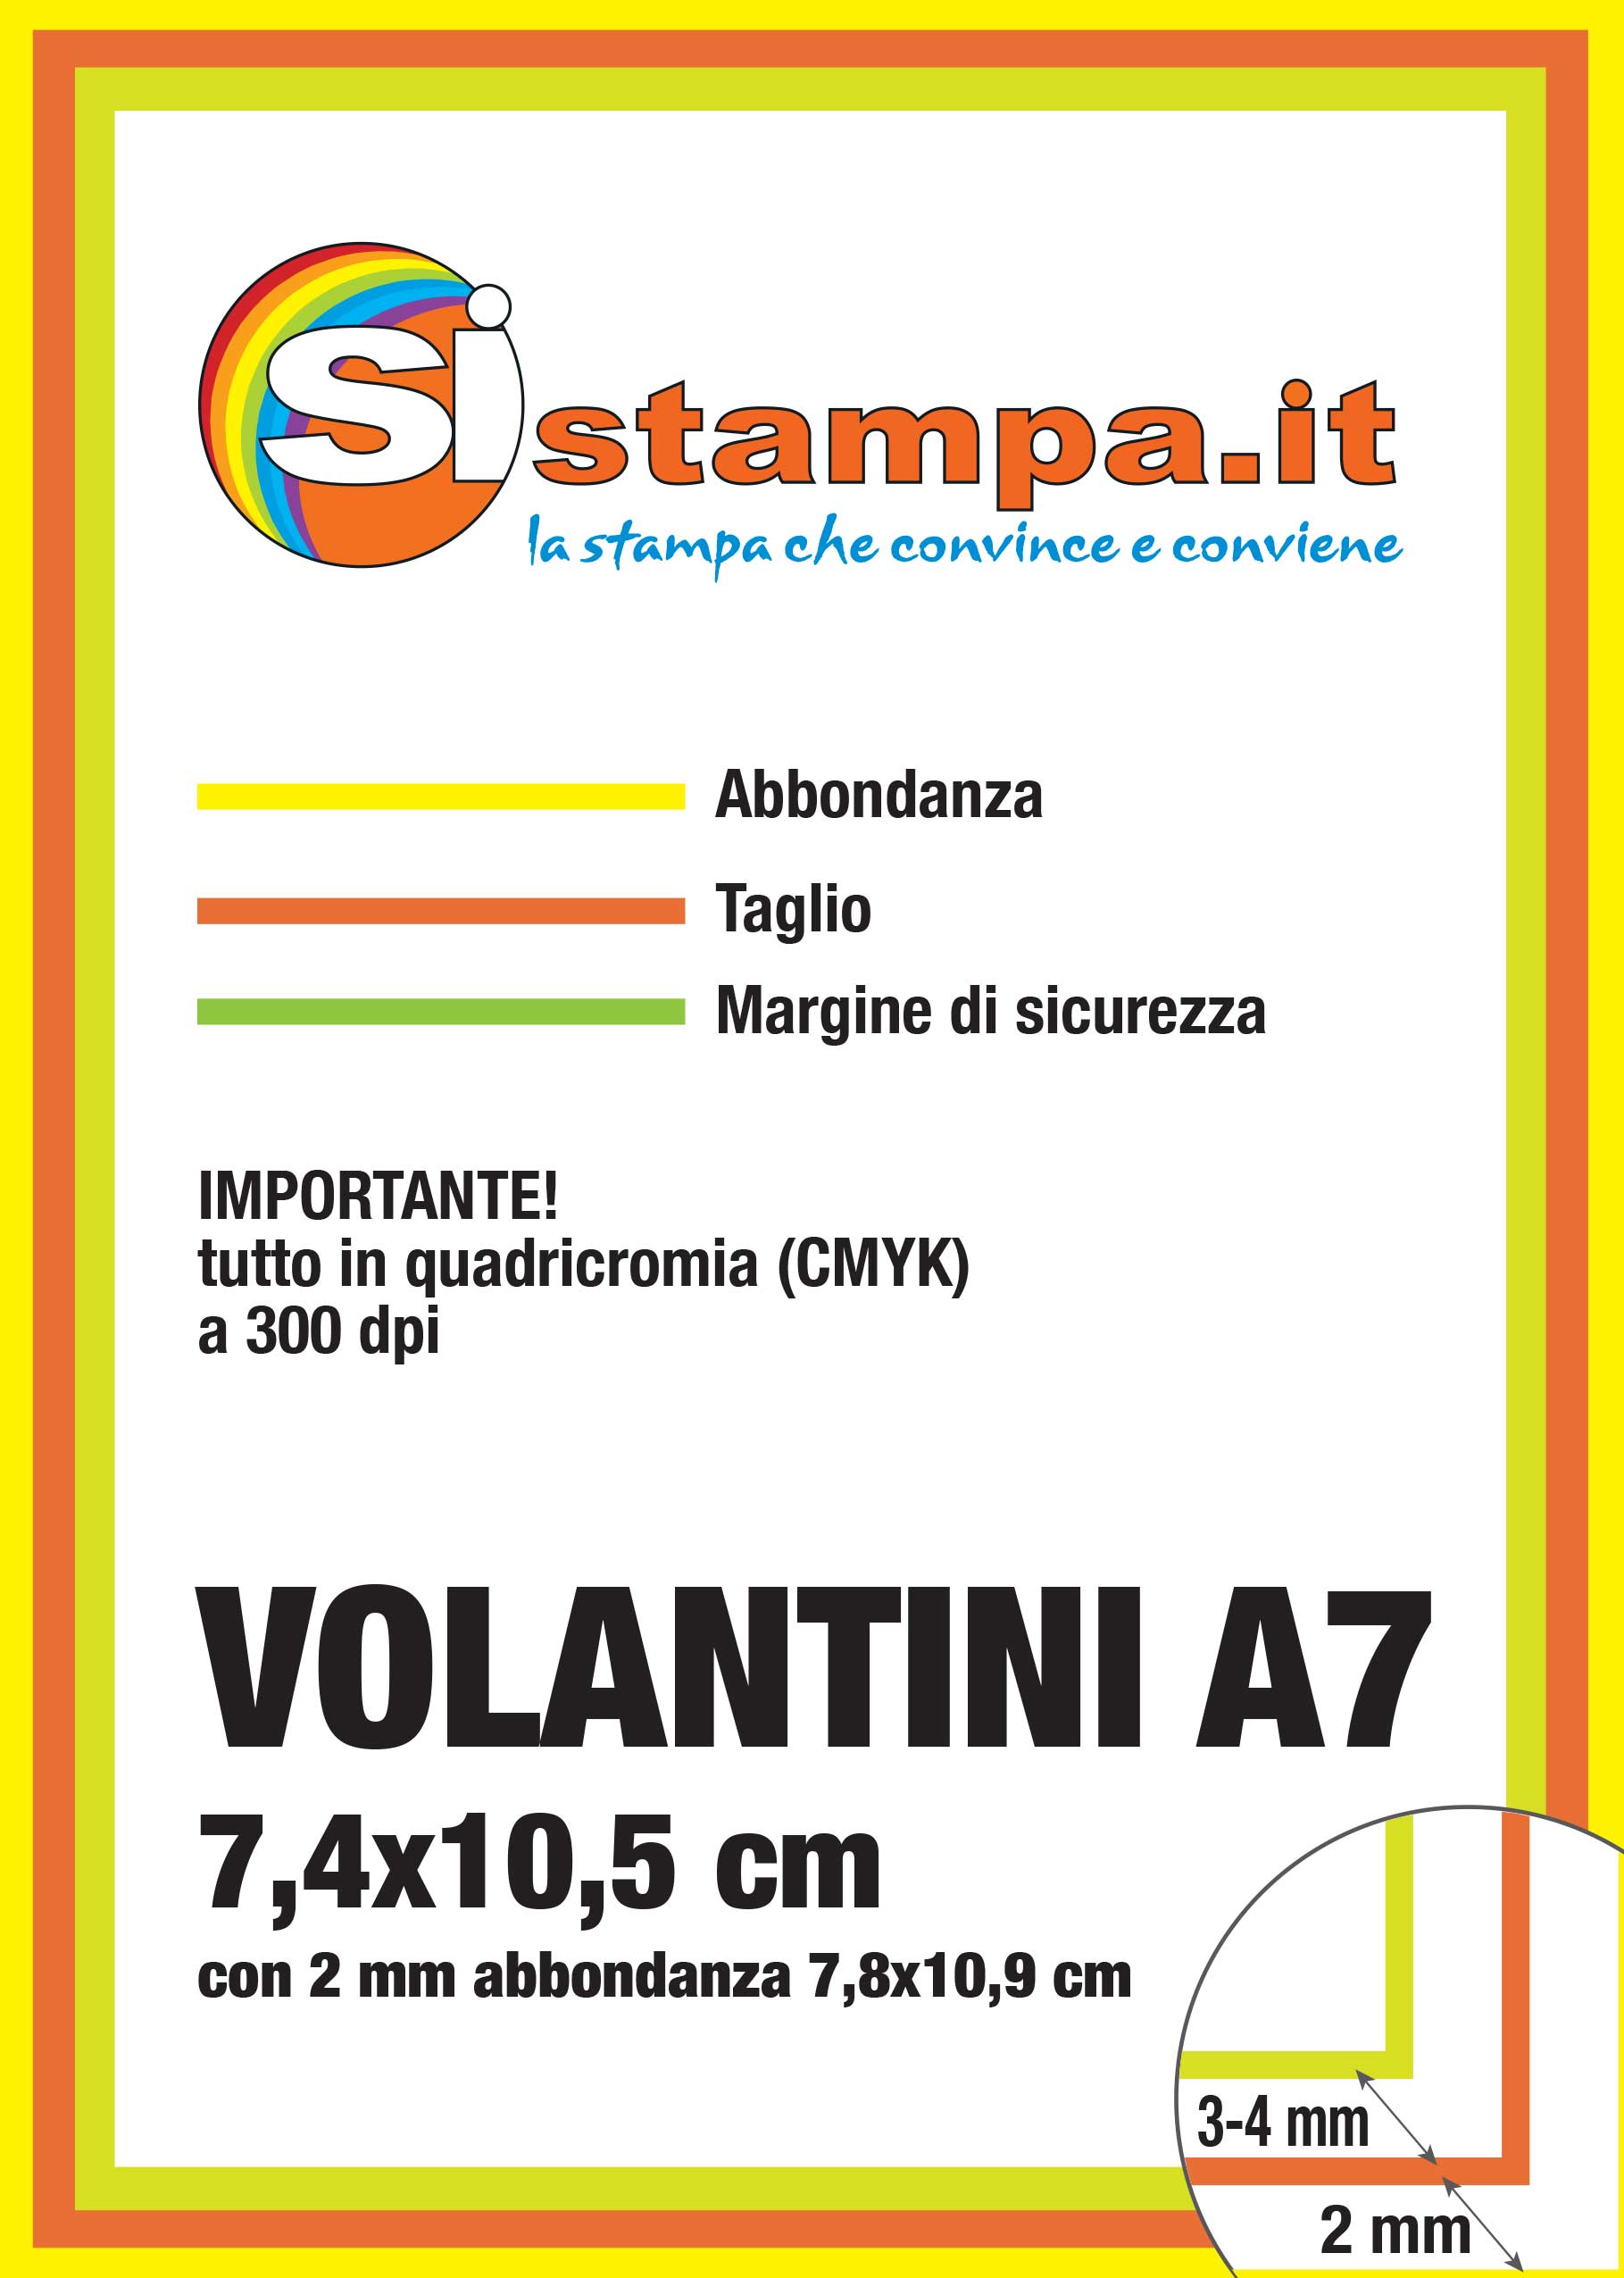 Preparazione Stampa Volantini A7 | SISTAMPA